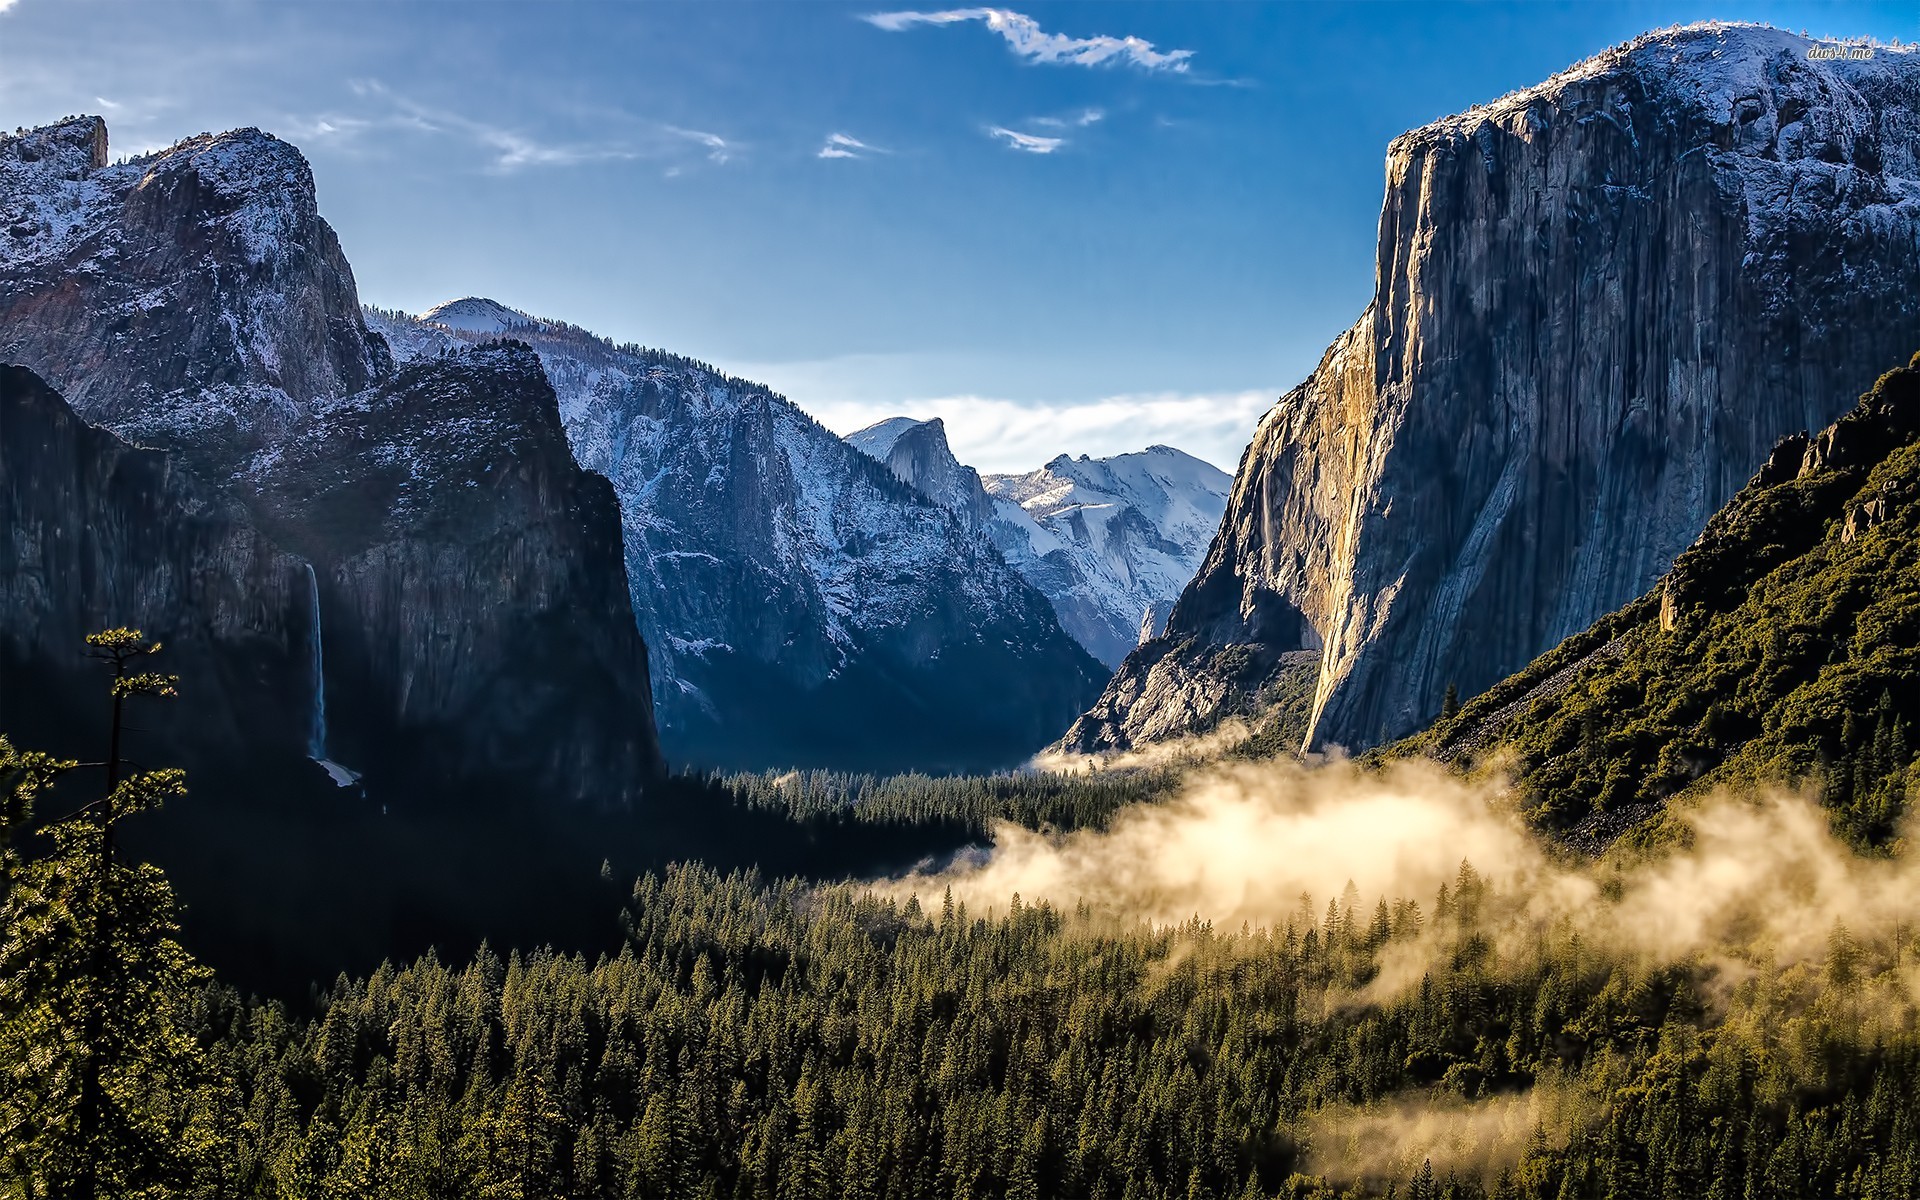 Yosemite Wallpapers HD | PixelsTalk.Net